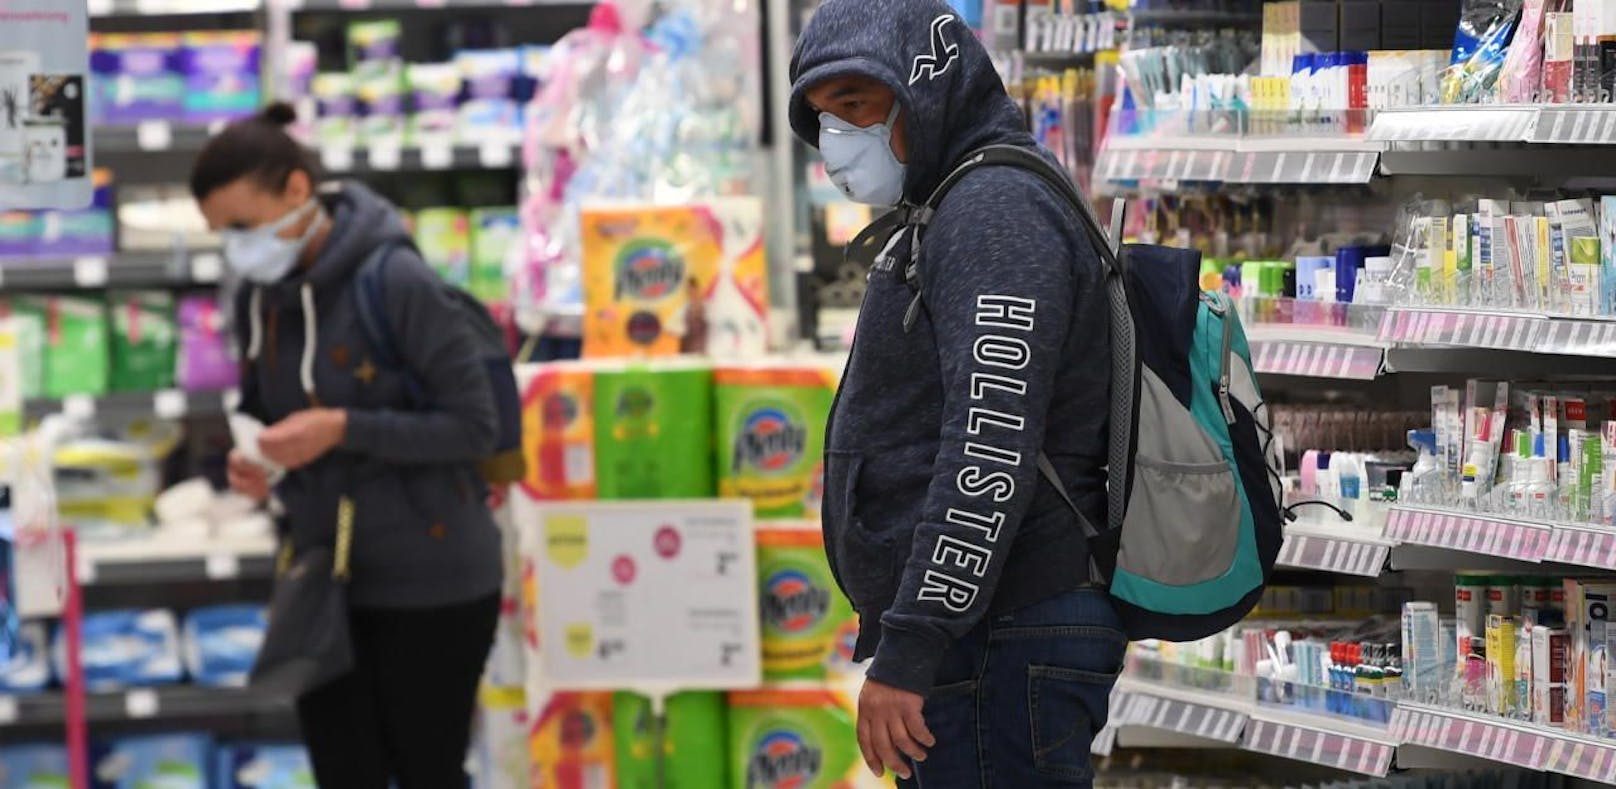 Ein Mann und eine Frau mit Schutzmasken in einem Supermarkt aufgenommen am Montag, 30. März 2020, in Schwechat. Supermärkte dürfen wegen der Coronakrise bald nur noch mit Masken betreten werden.